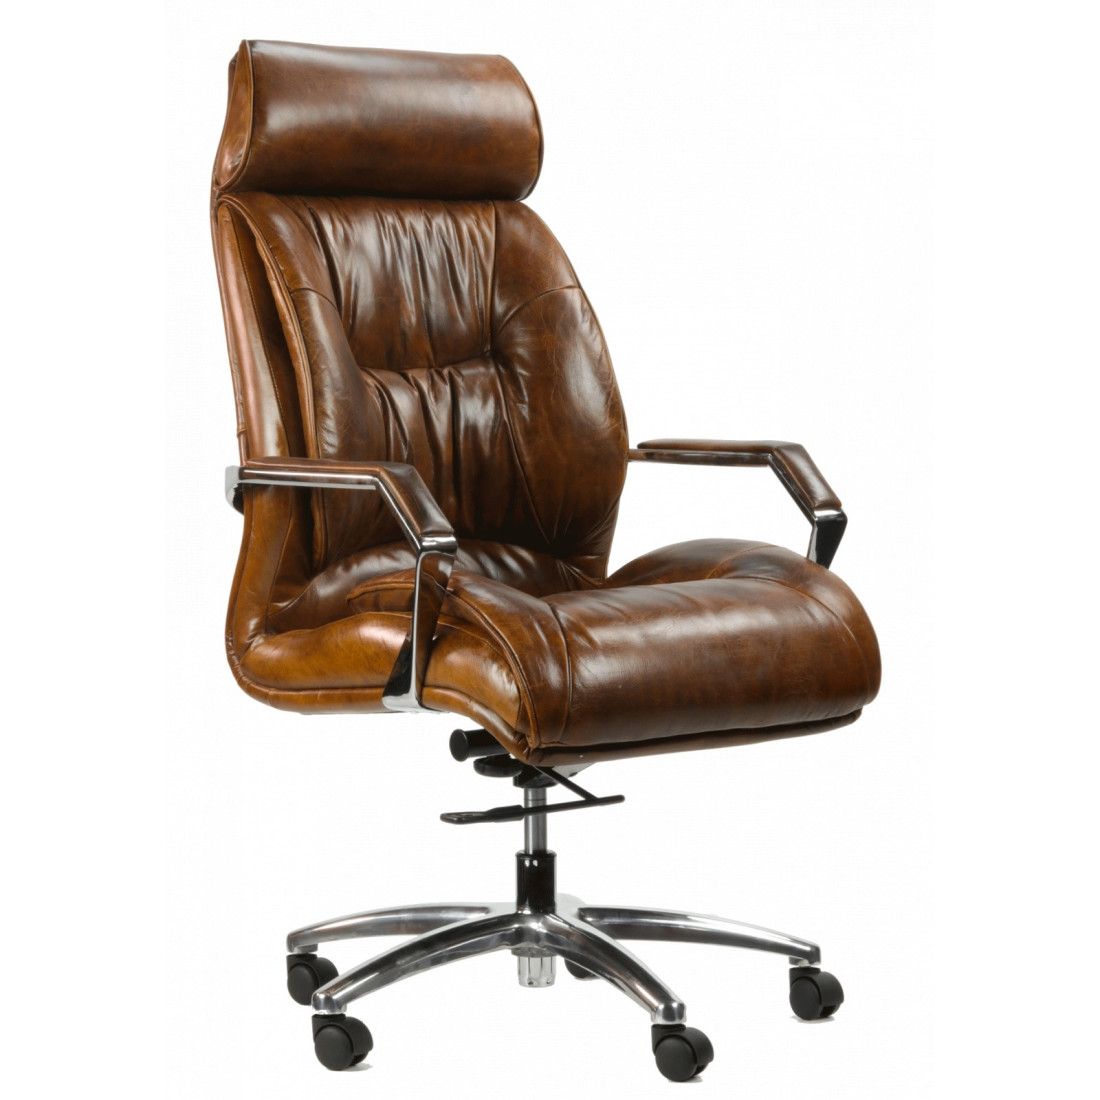 Fauteuil de Bureau Confortable Chaise Bureau Ergonomique Large